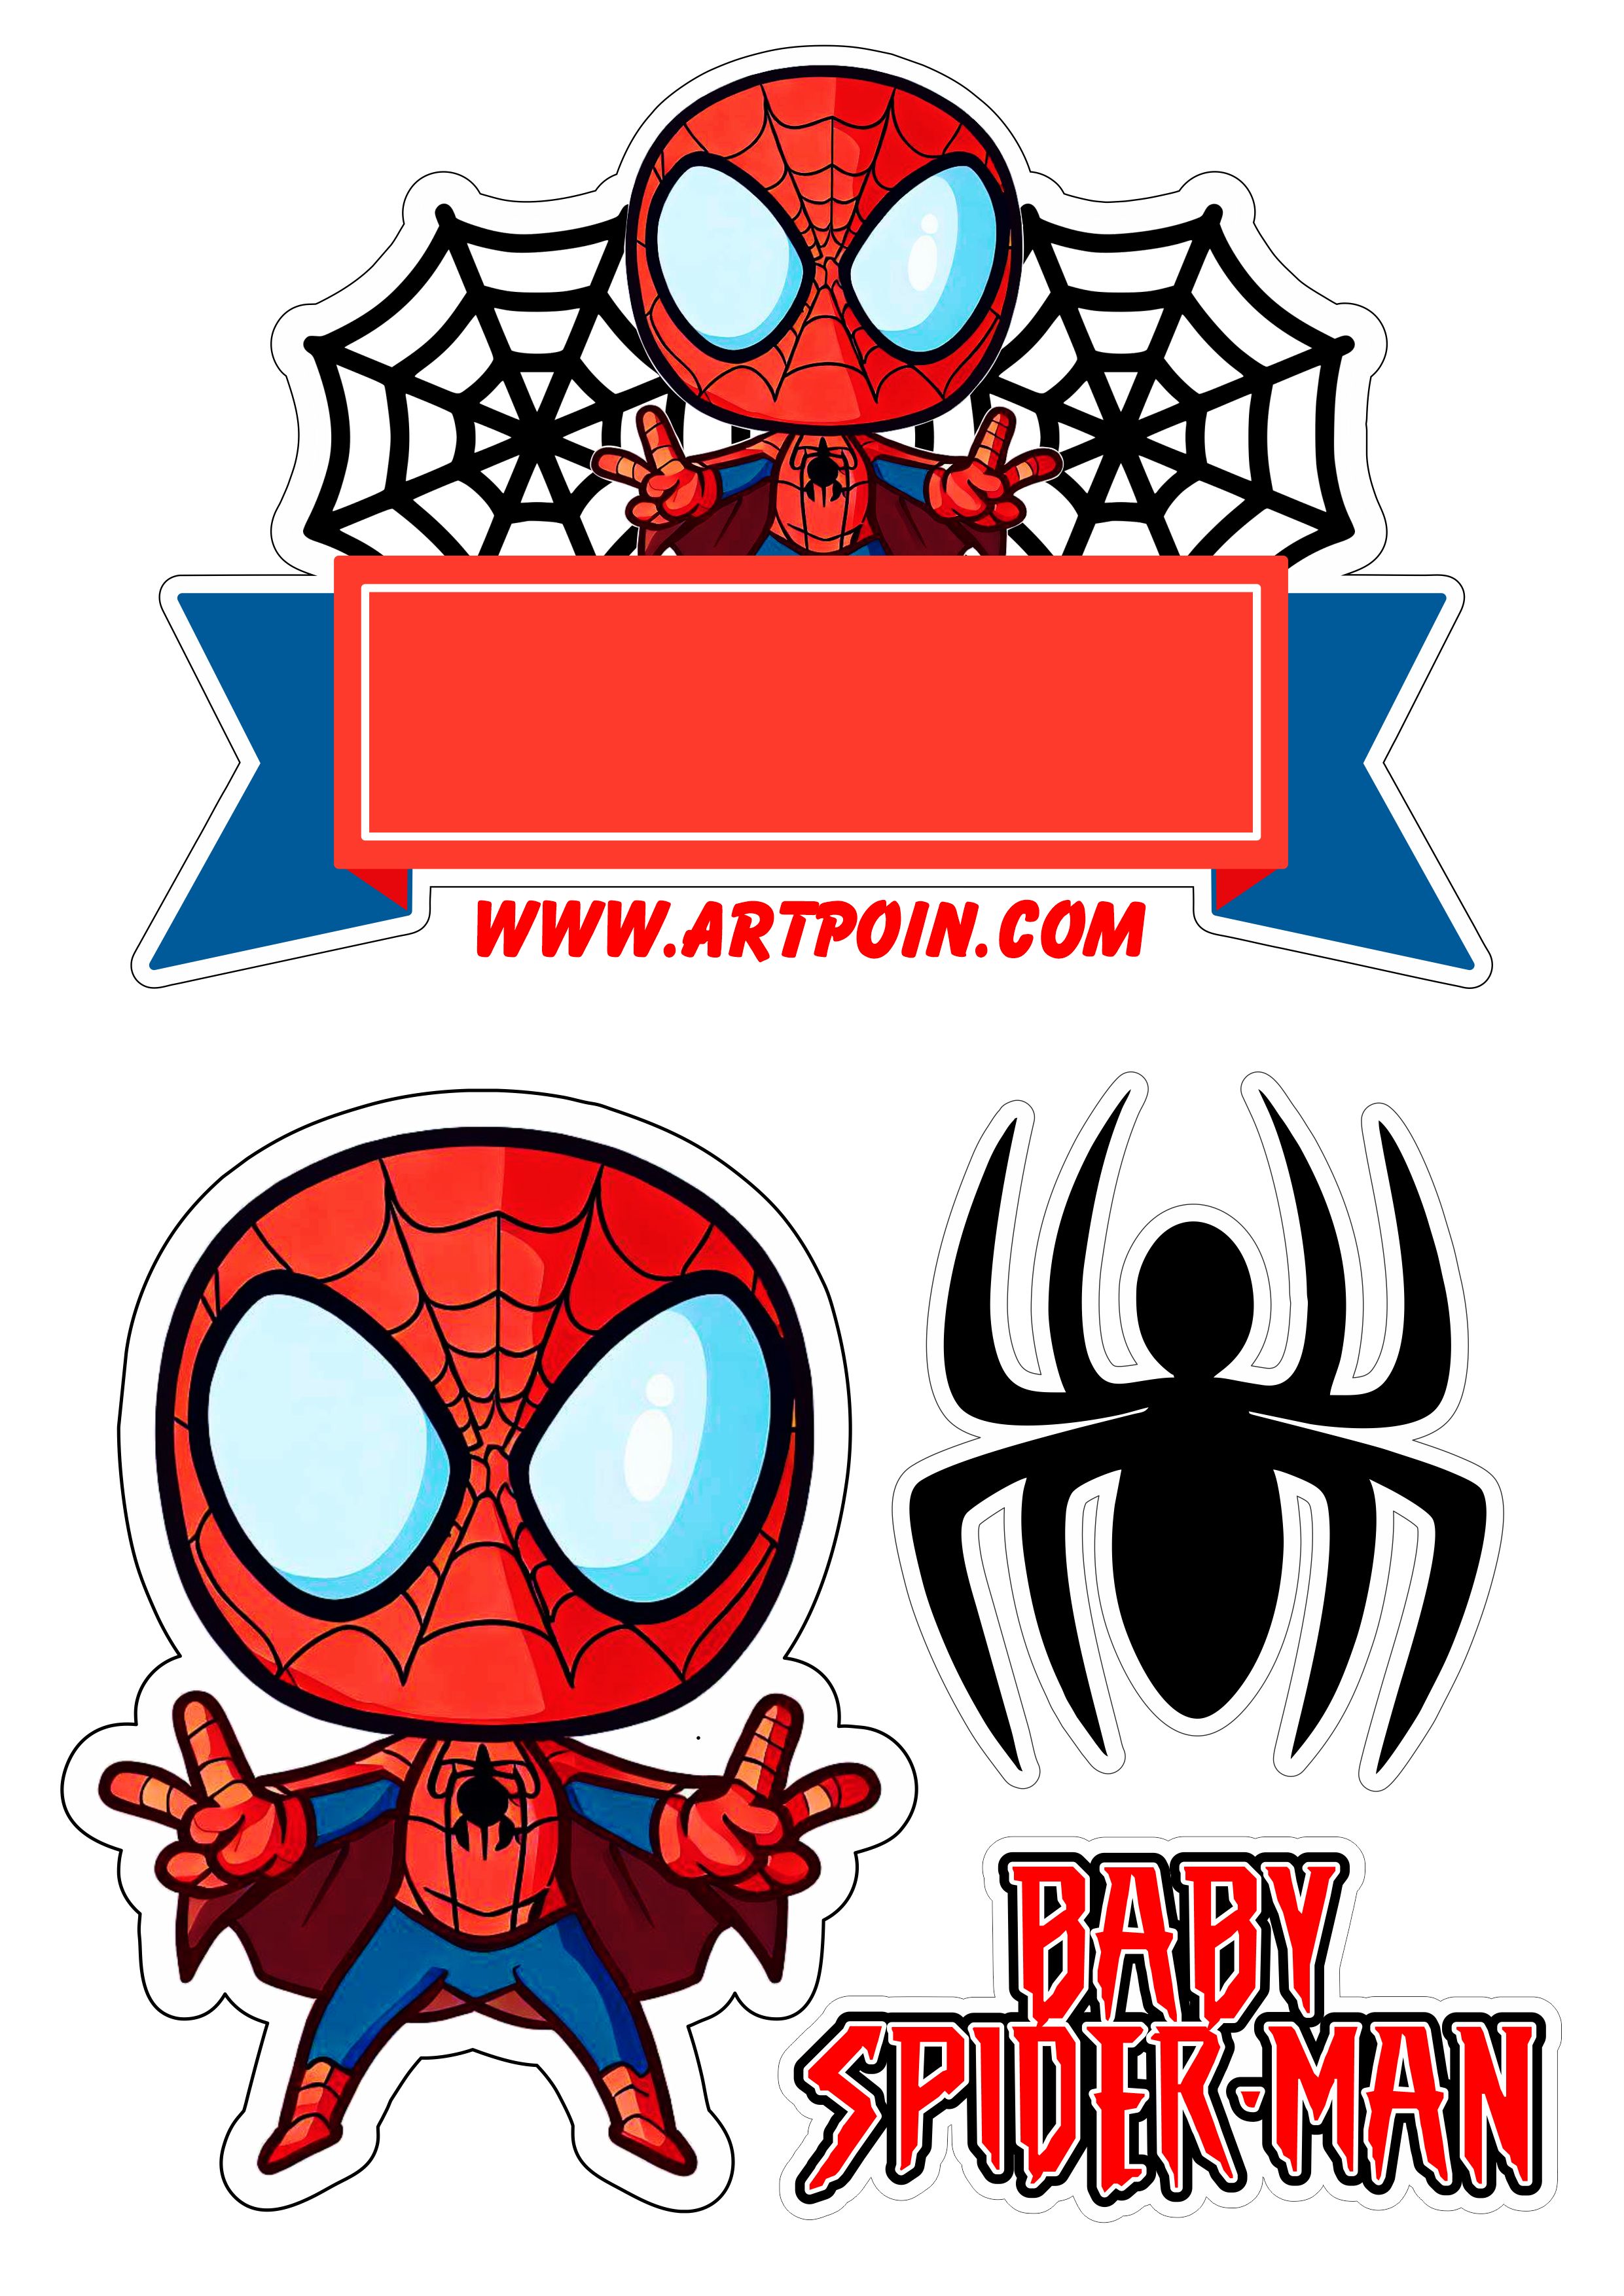 Topo de bolo para imprimir homem aranha baby spider man decoração de aniversário infantil artes gráficas ilustração png